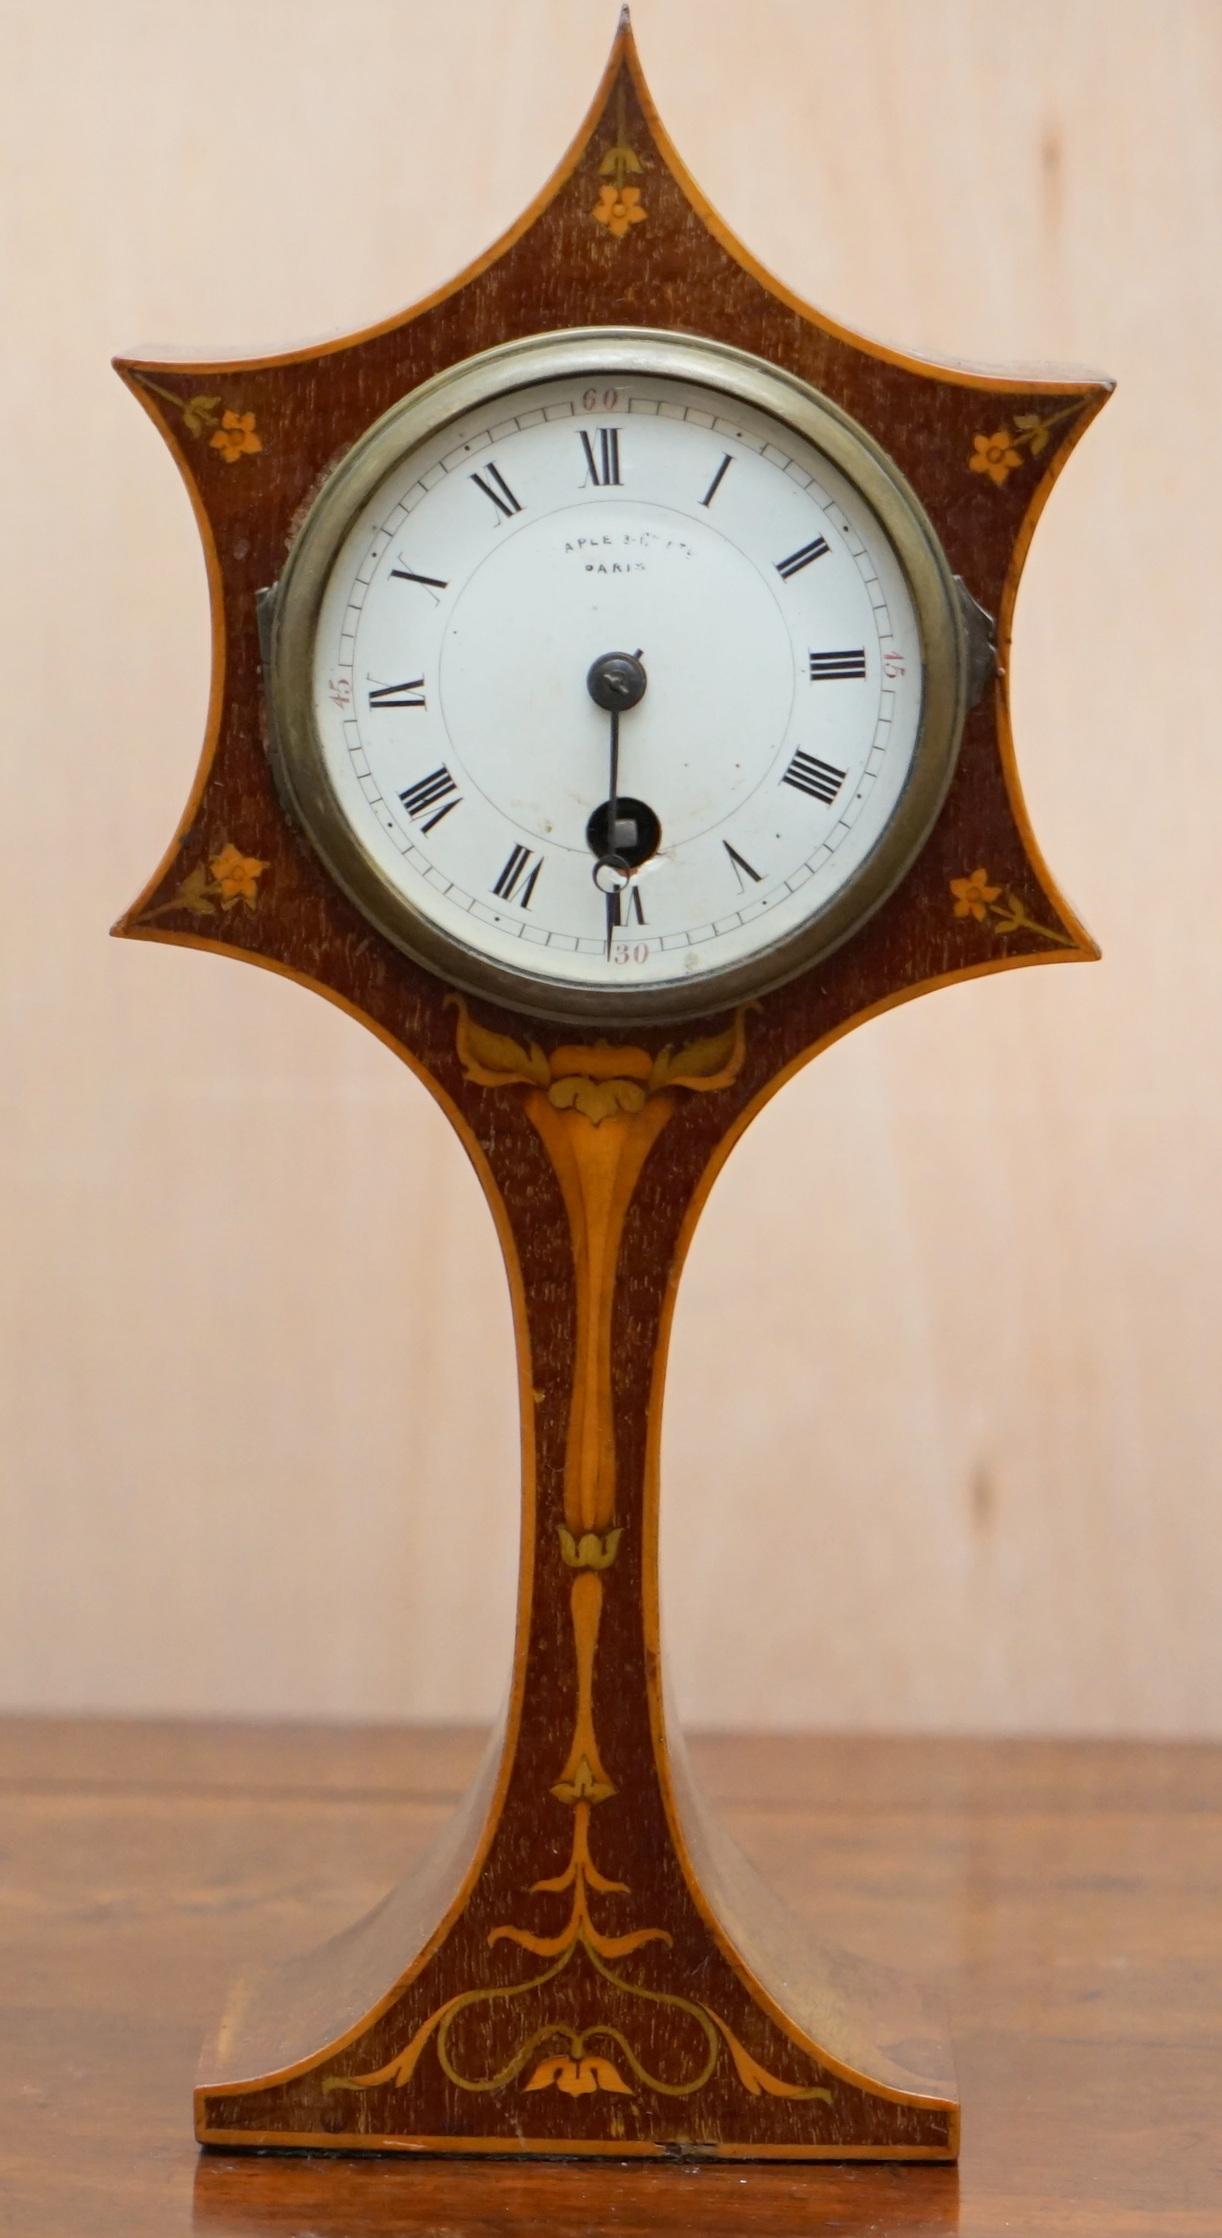 Wimbledon-Möbel

Wimbledon-Furniture freut sich, diese schöne Jugendstil-Mahagoni-Uhr mit Intarsien um 1890 zum Verkauf anbieten zu können.

Ein sehr gut aussehendes und dekoratives Stück, die Intarsieneinlage ist besonders schön, das Uhrwerk